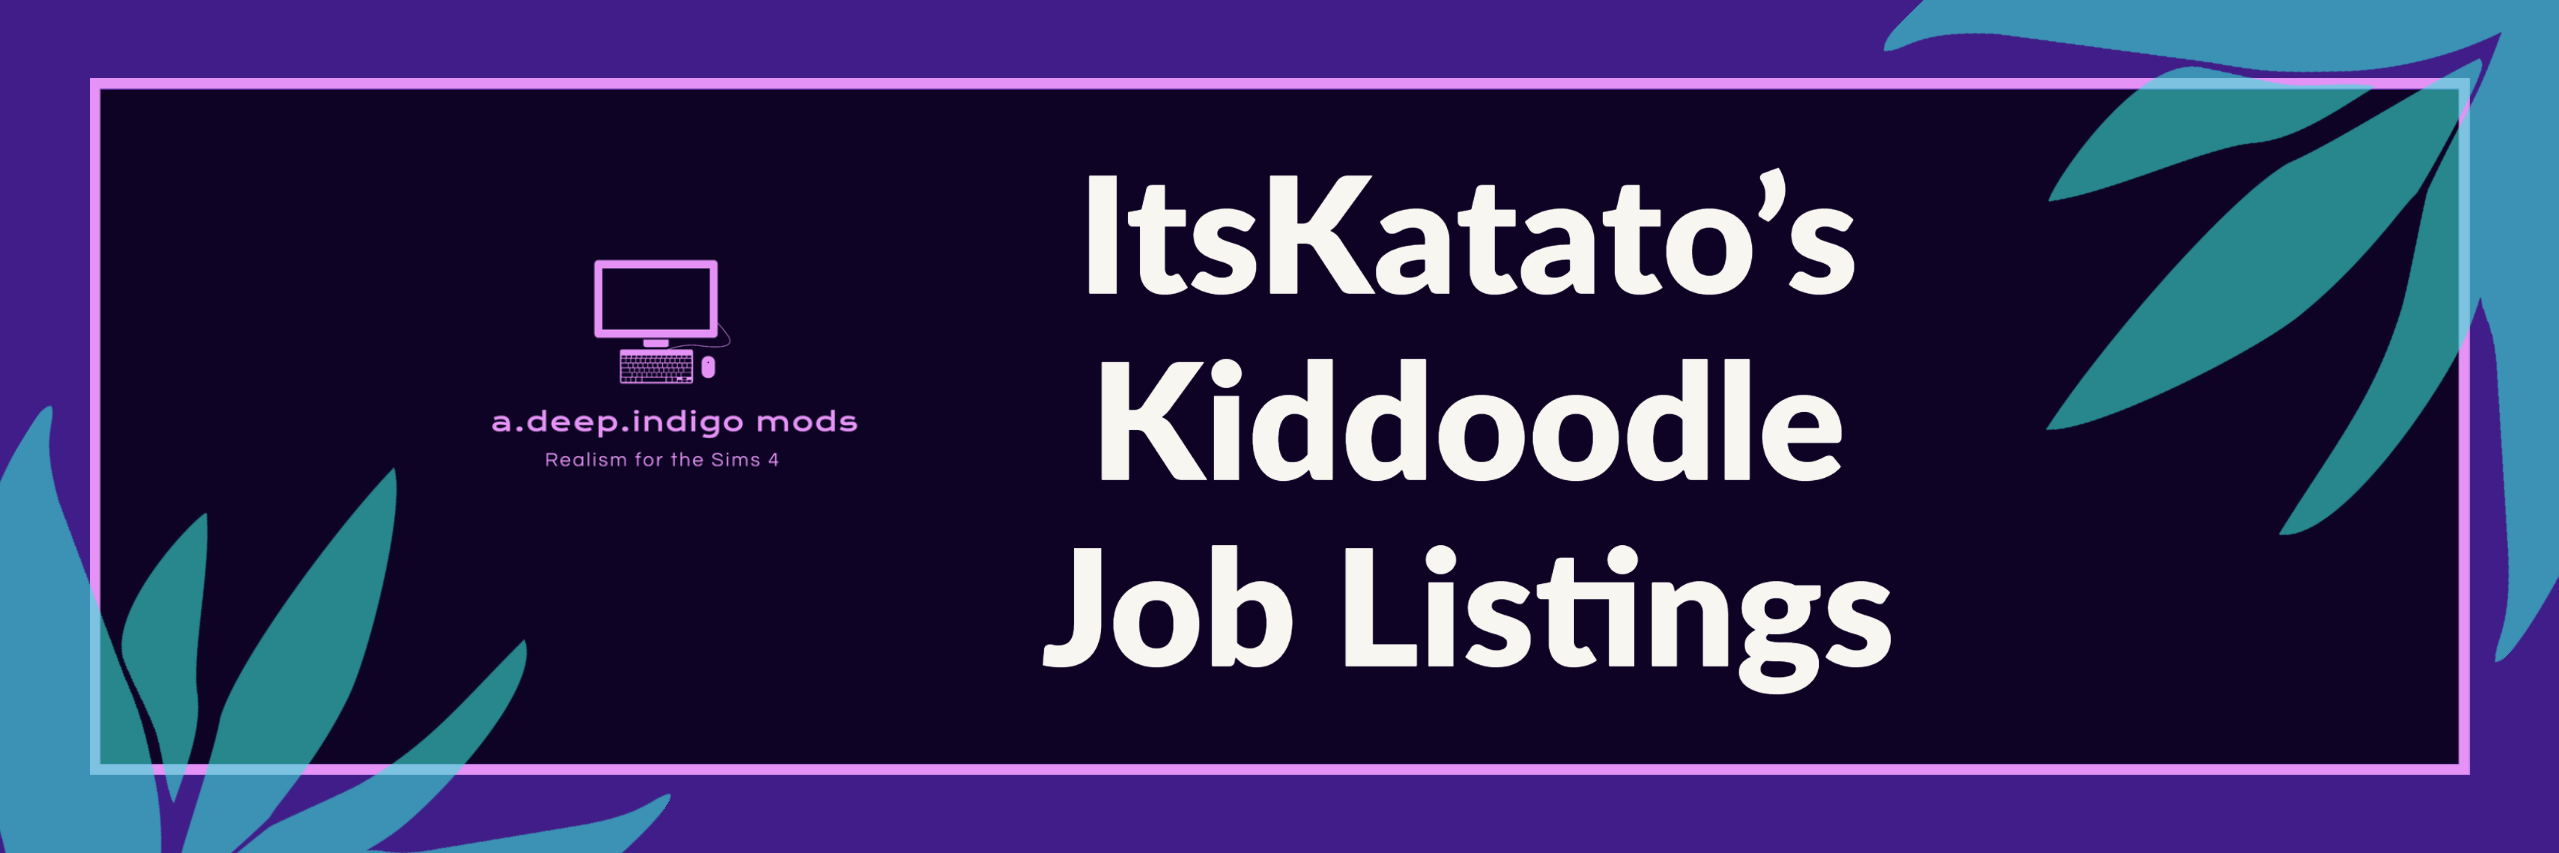 Kiddoodle Job Listings